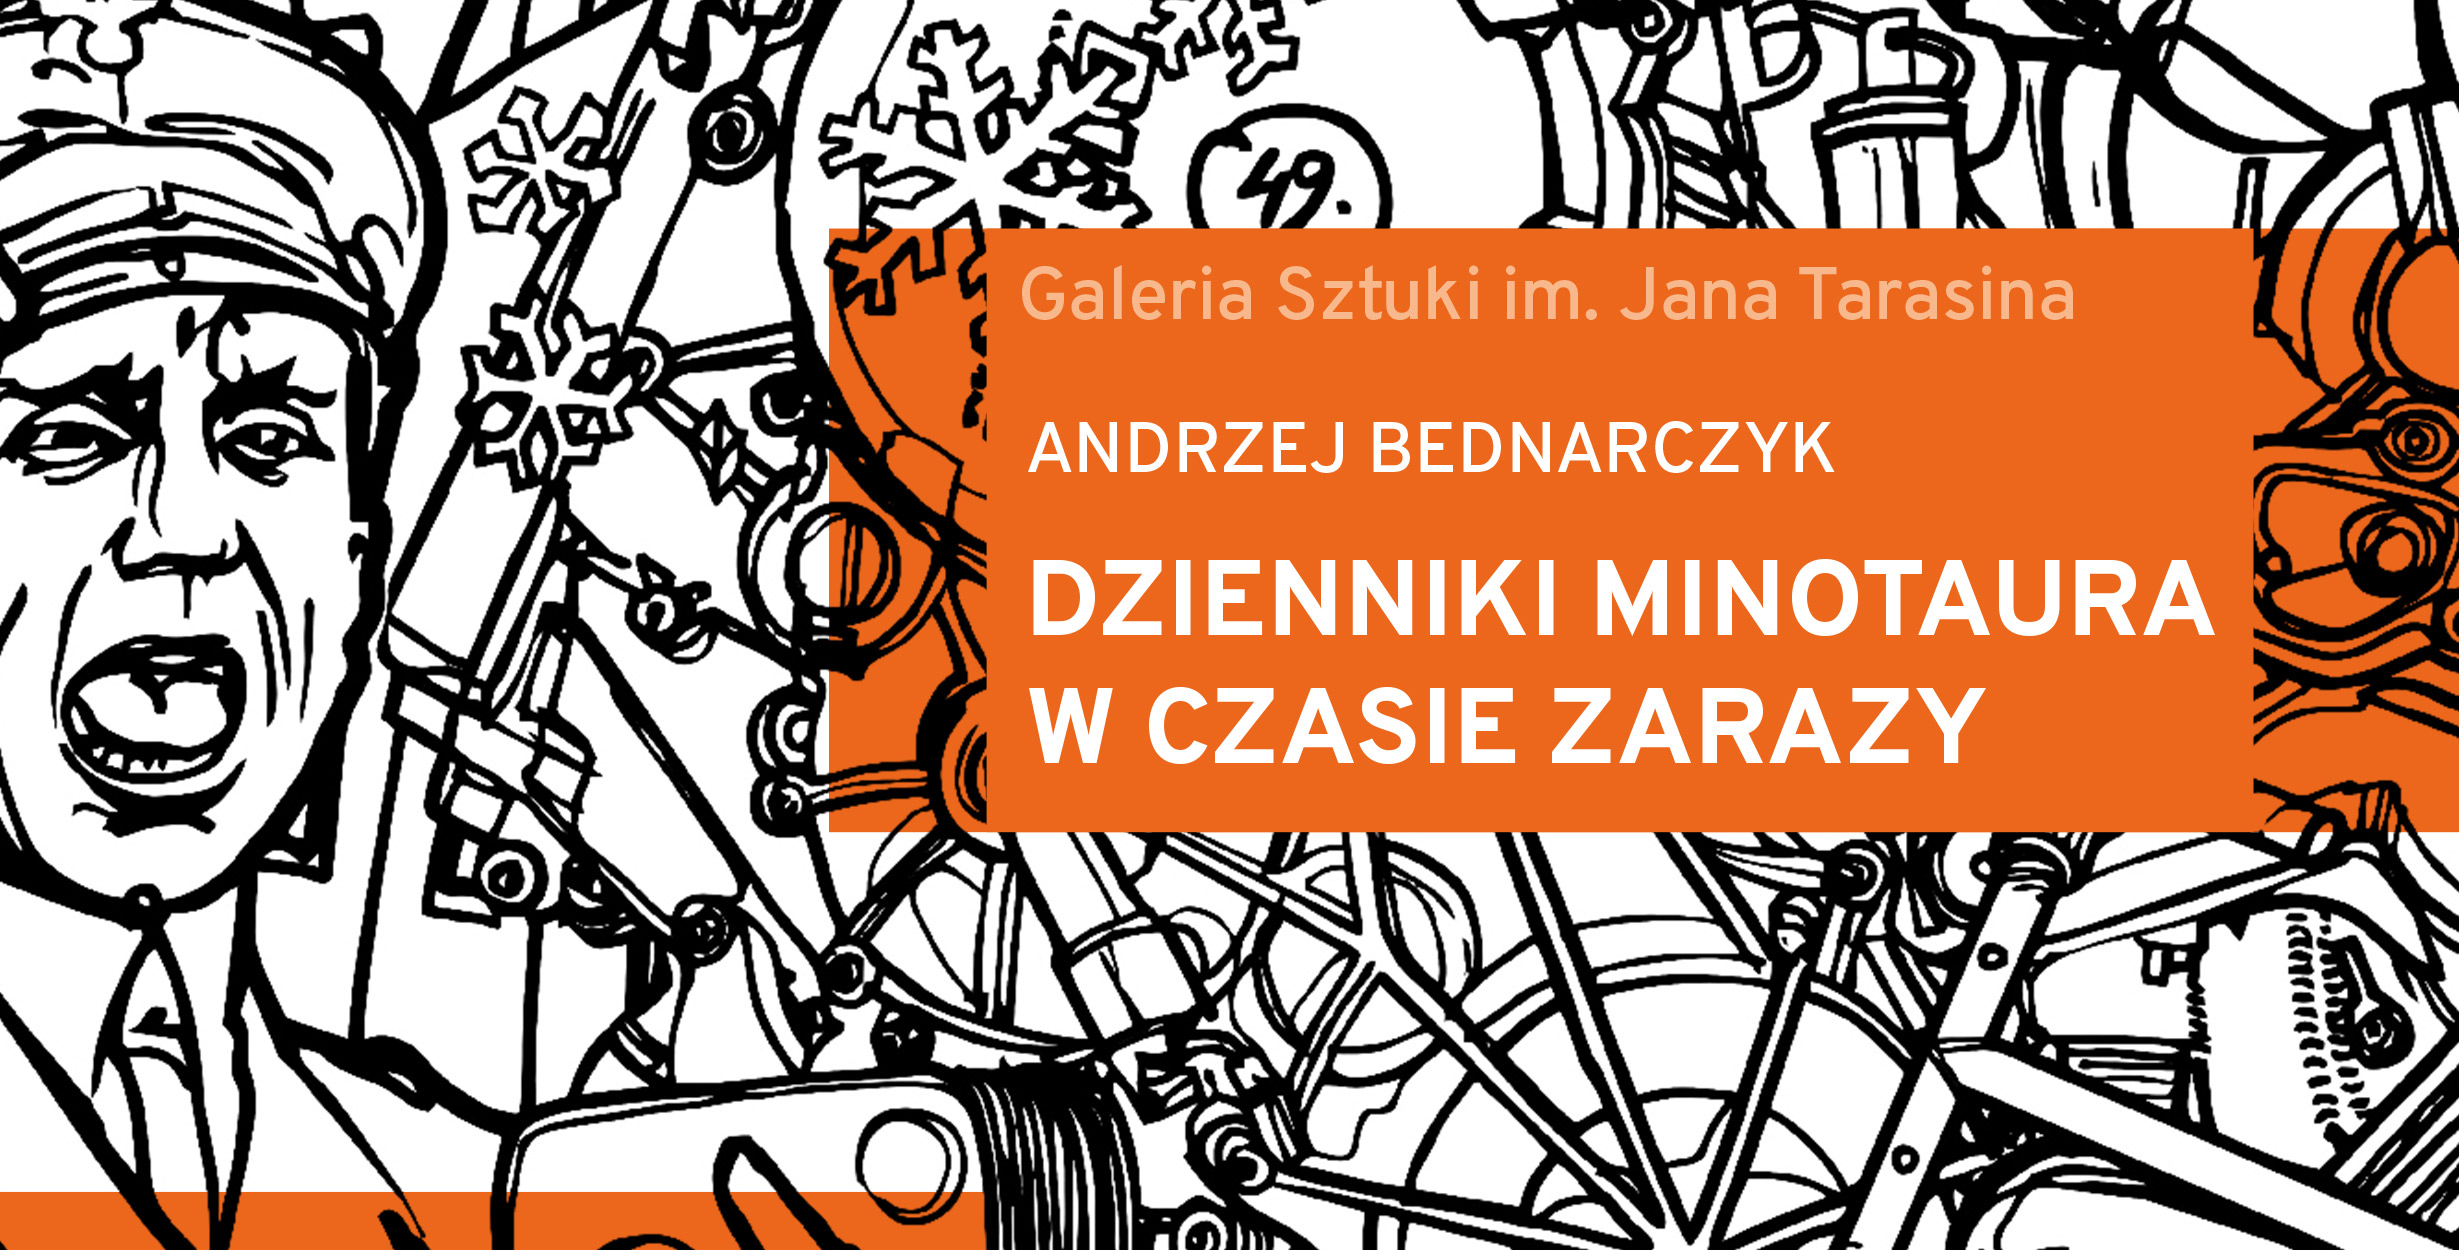 Andrzej Bednarczyk “Dzienniki Minotaura w czasie zarazy”